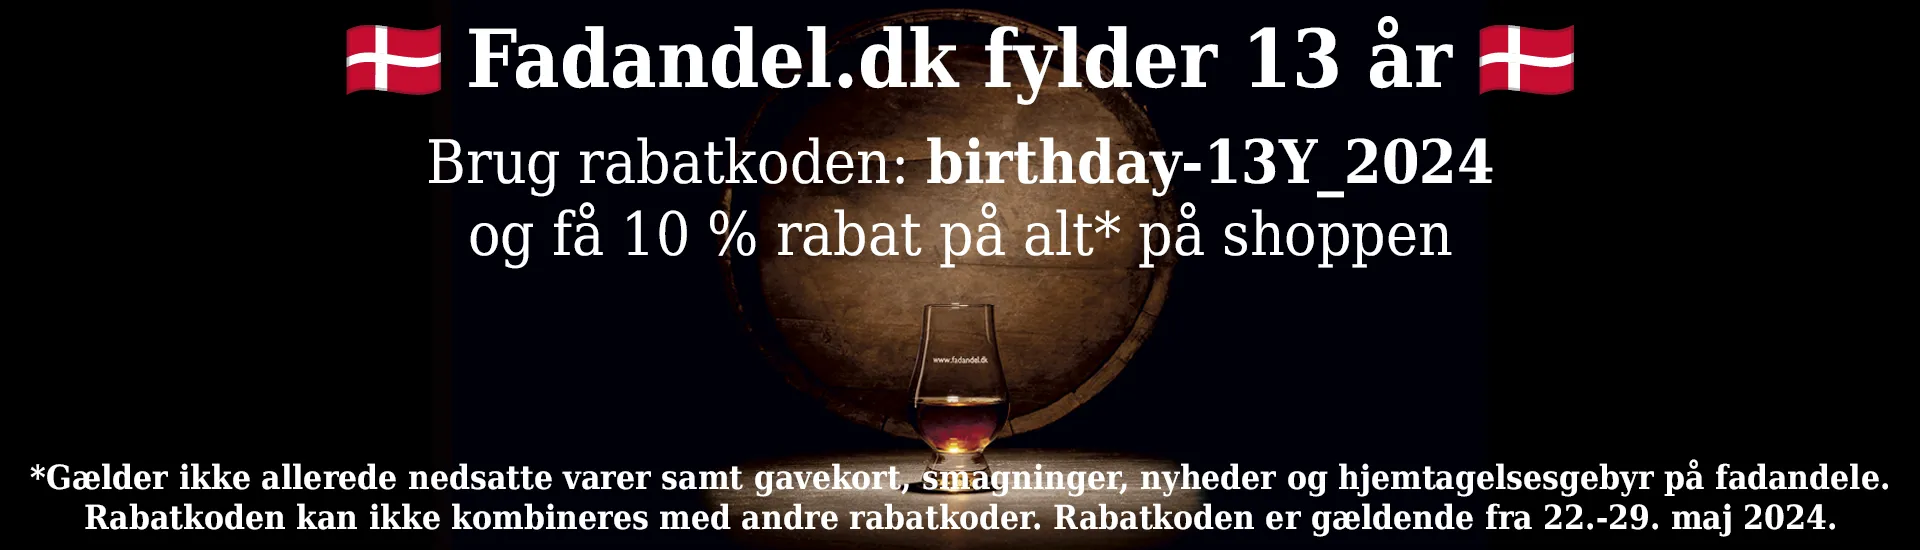 Fadandel.dk fødselsdag 13 år 2024